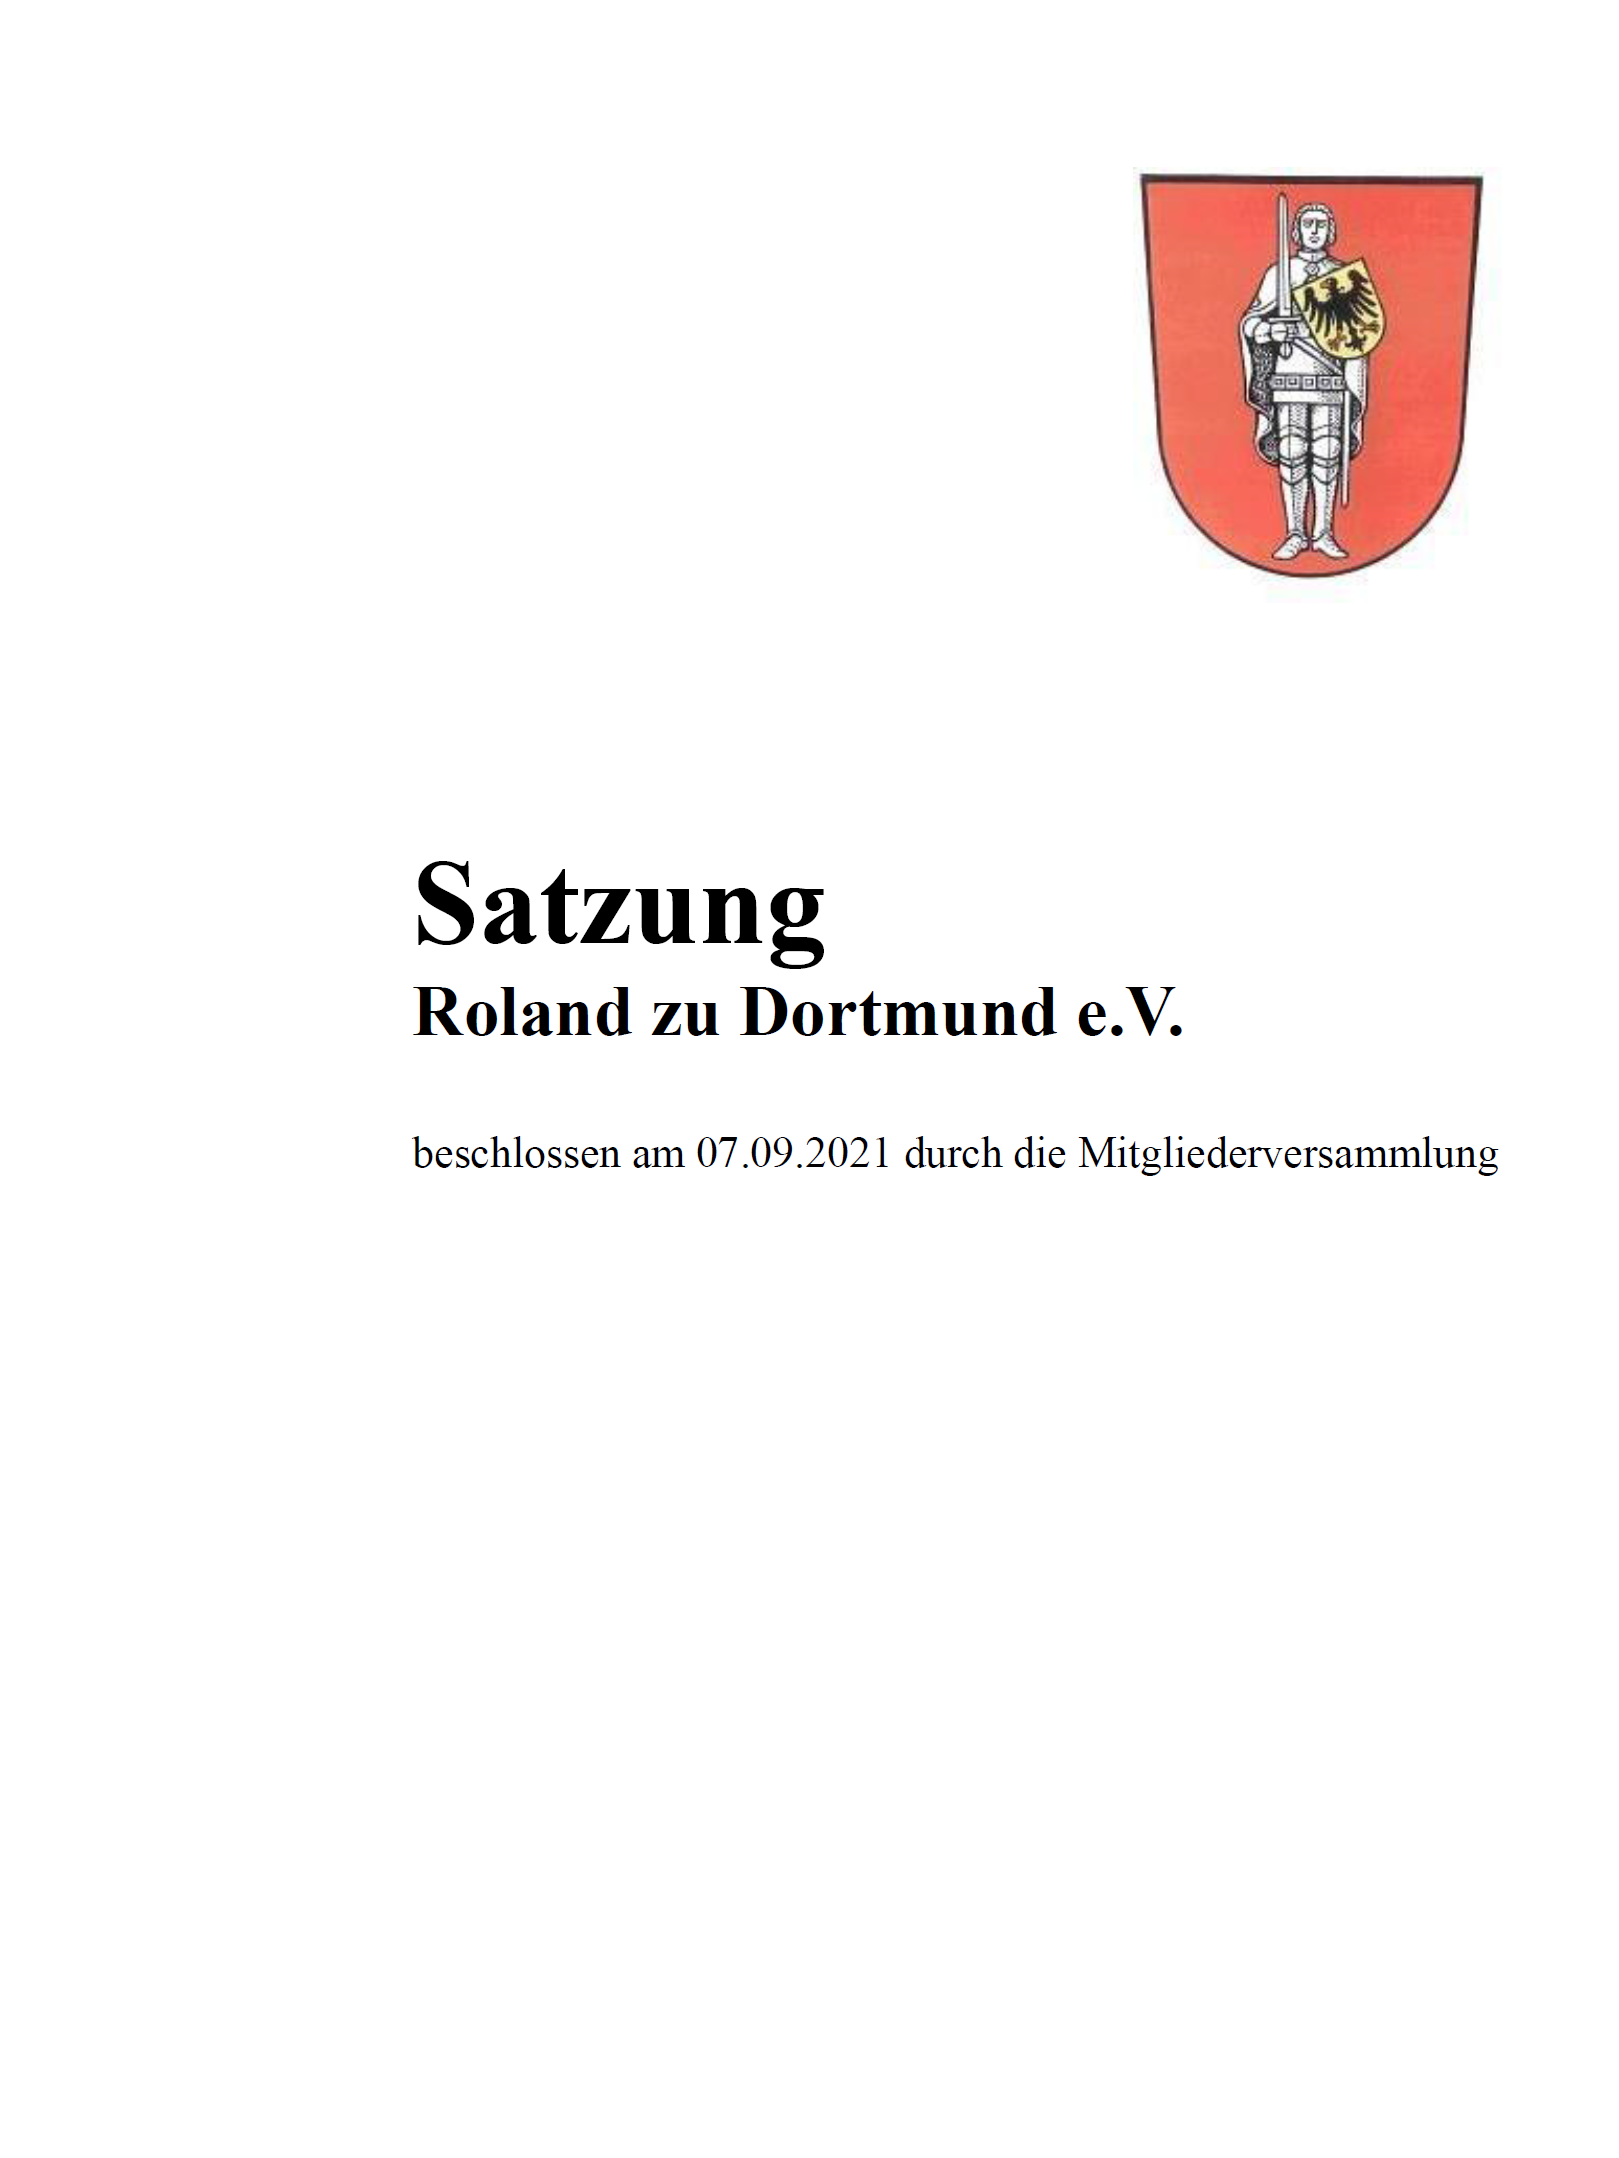 RzD (2021), Satzung des Roland zu Dortmund